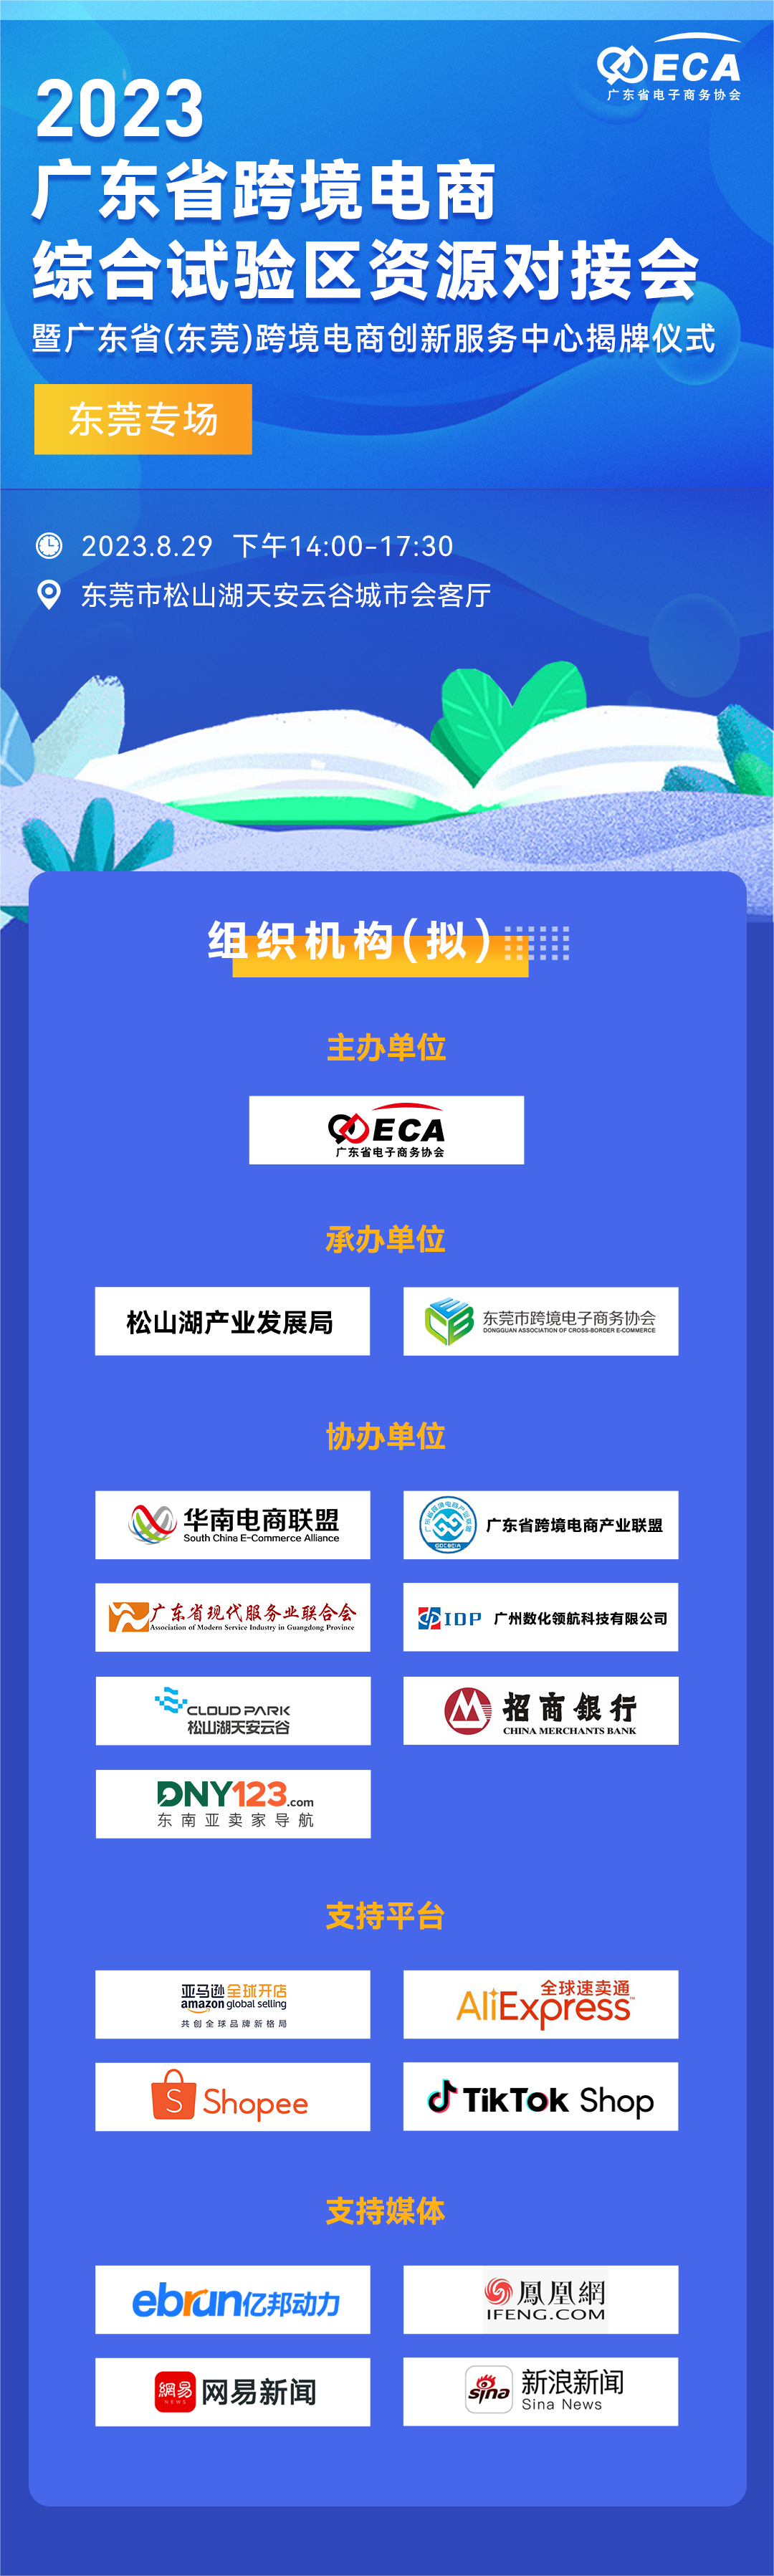 2023广东省跨境电商综合试验区资源对接会